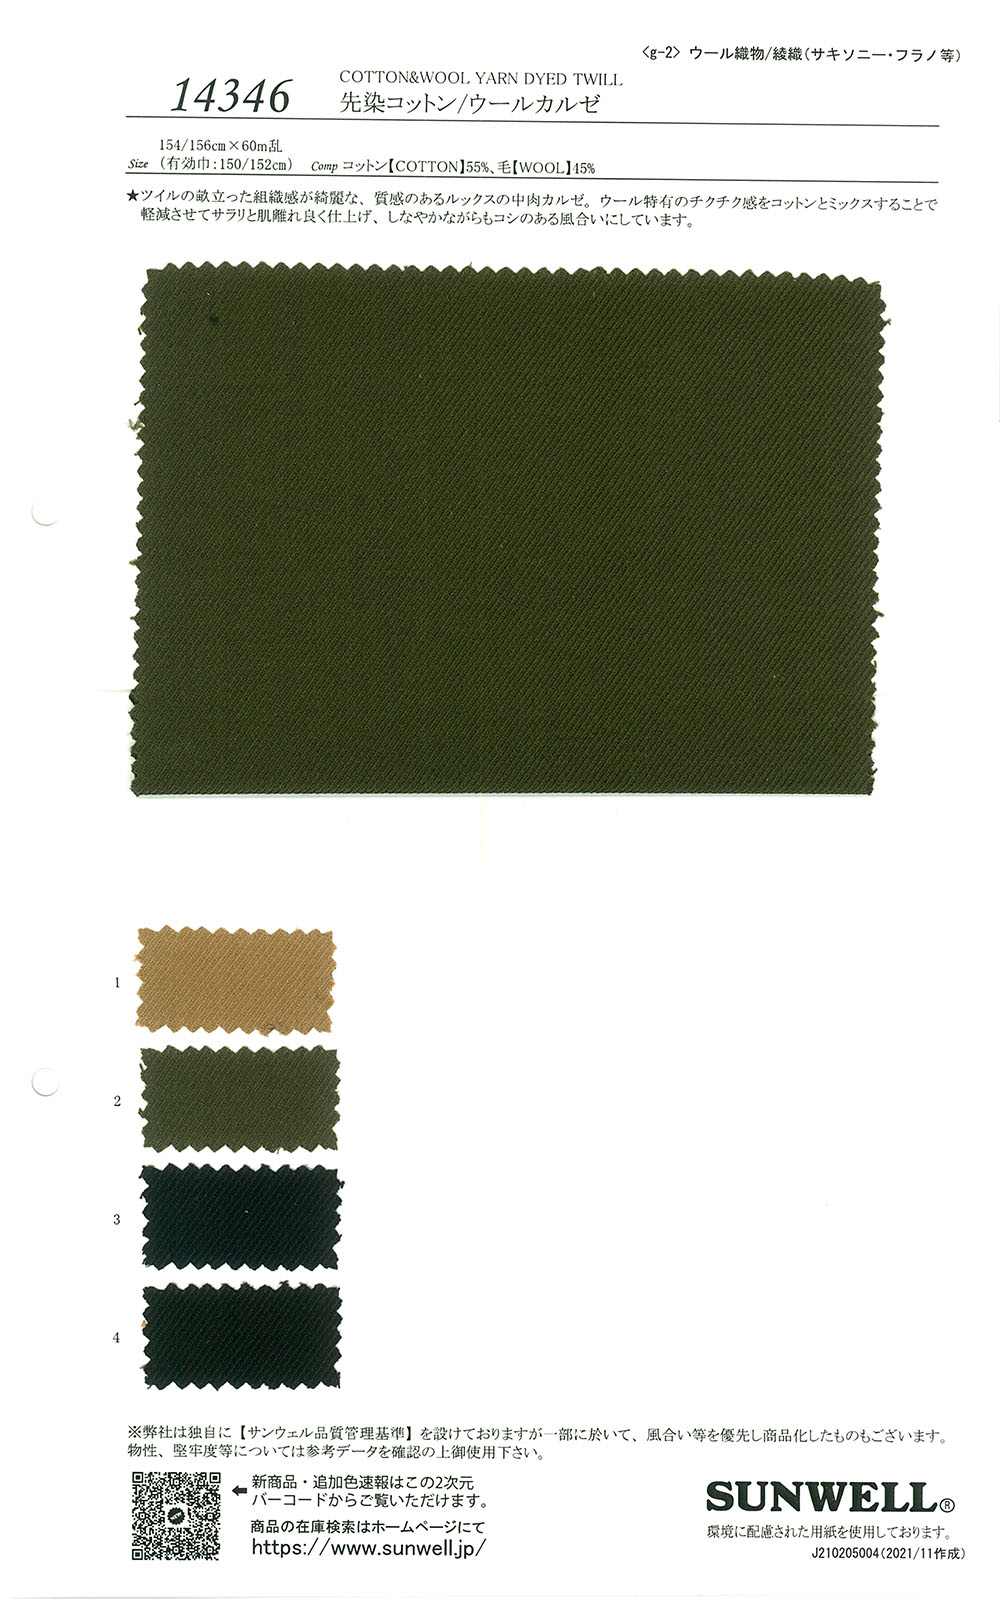 14346 Algodón Teñido En Hilo/lana Kalze[Fabrica Textil] SUNWELL